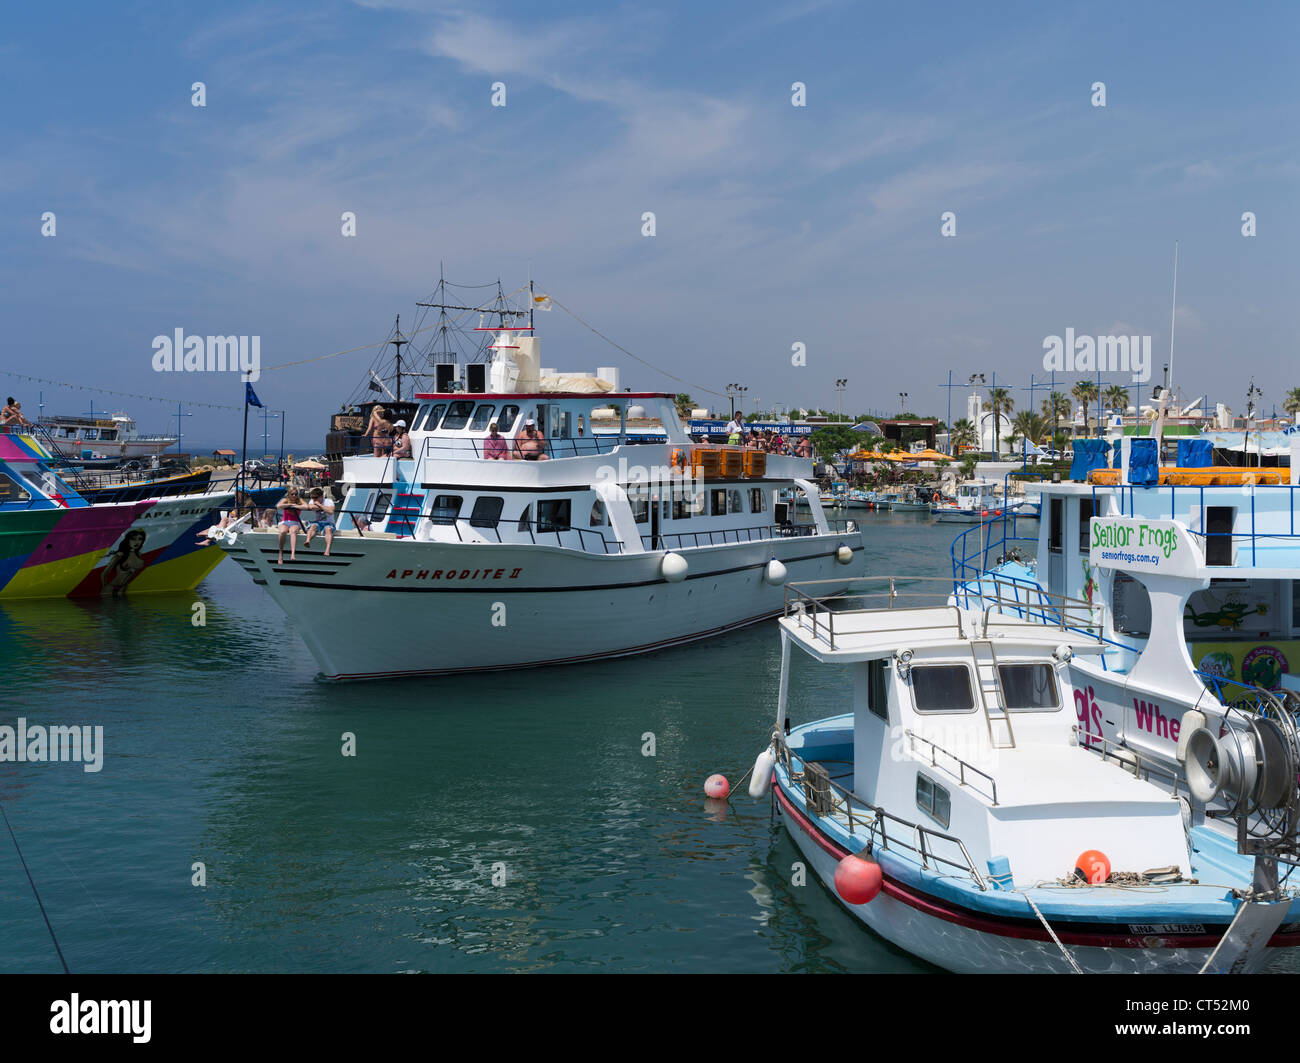 DH Liminaki puerto AYIA NAPA CHIPRE SUR Fiesta turística crucero de placer barco salir de la gente del puerto Foto de stock